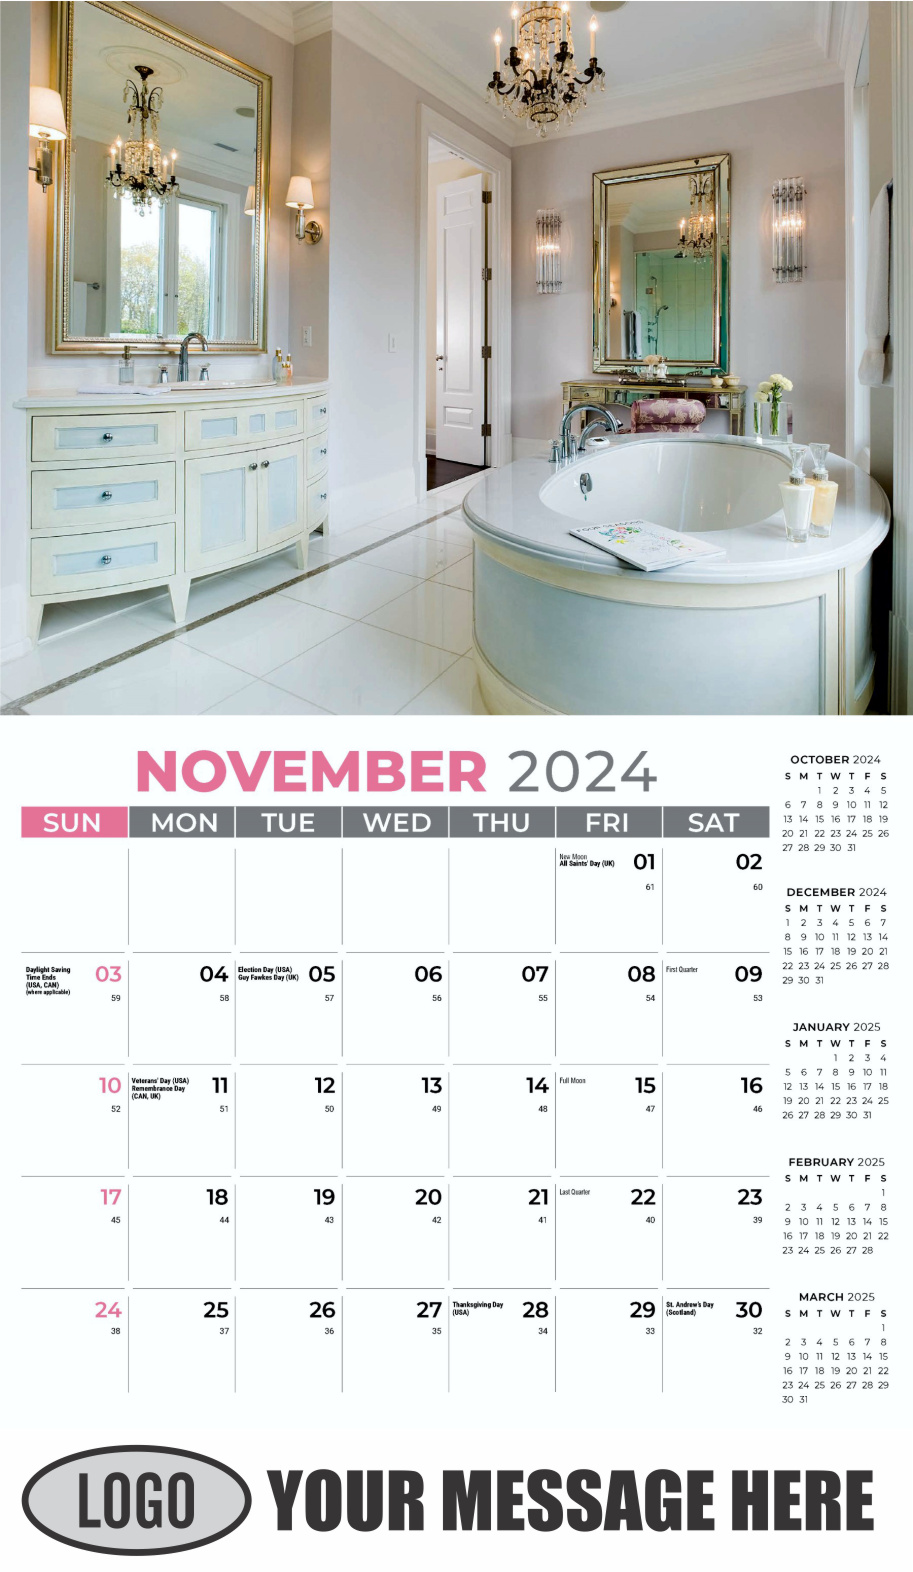 Decor and Design 2024 Interior Design Business Promotional Calendar - November